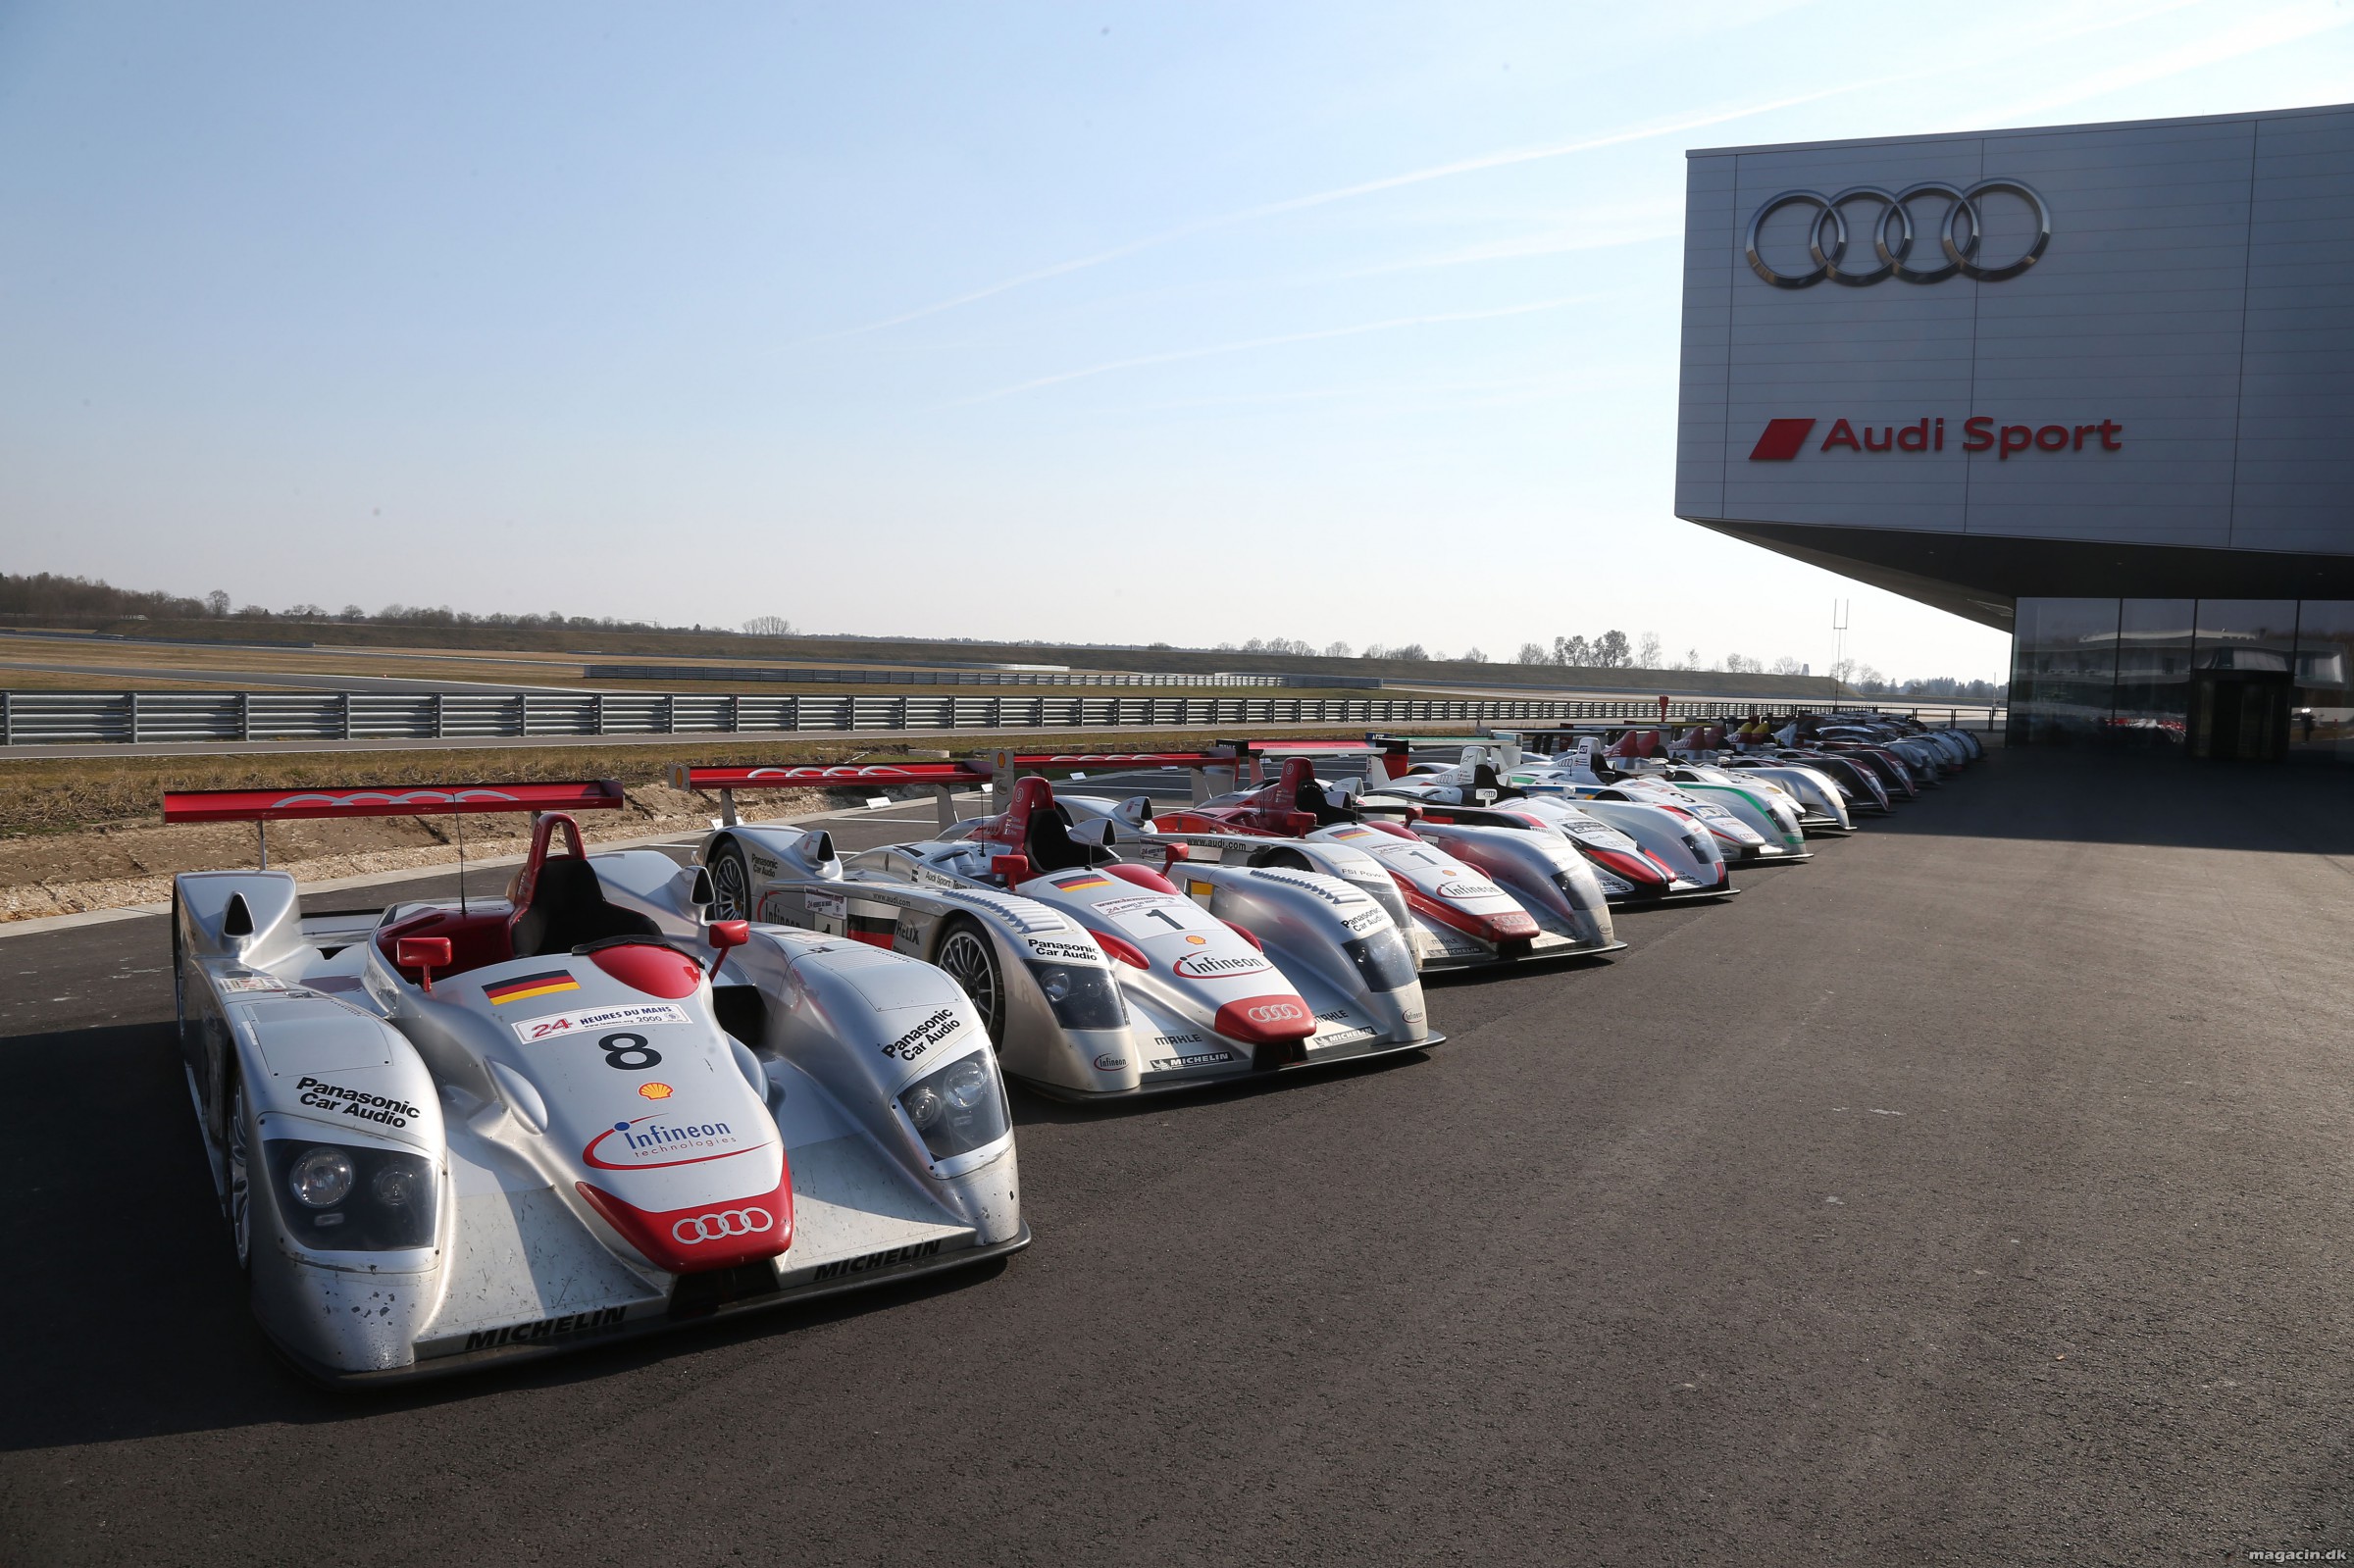 Audis 13 Le Mans vindere samlet for første gang